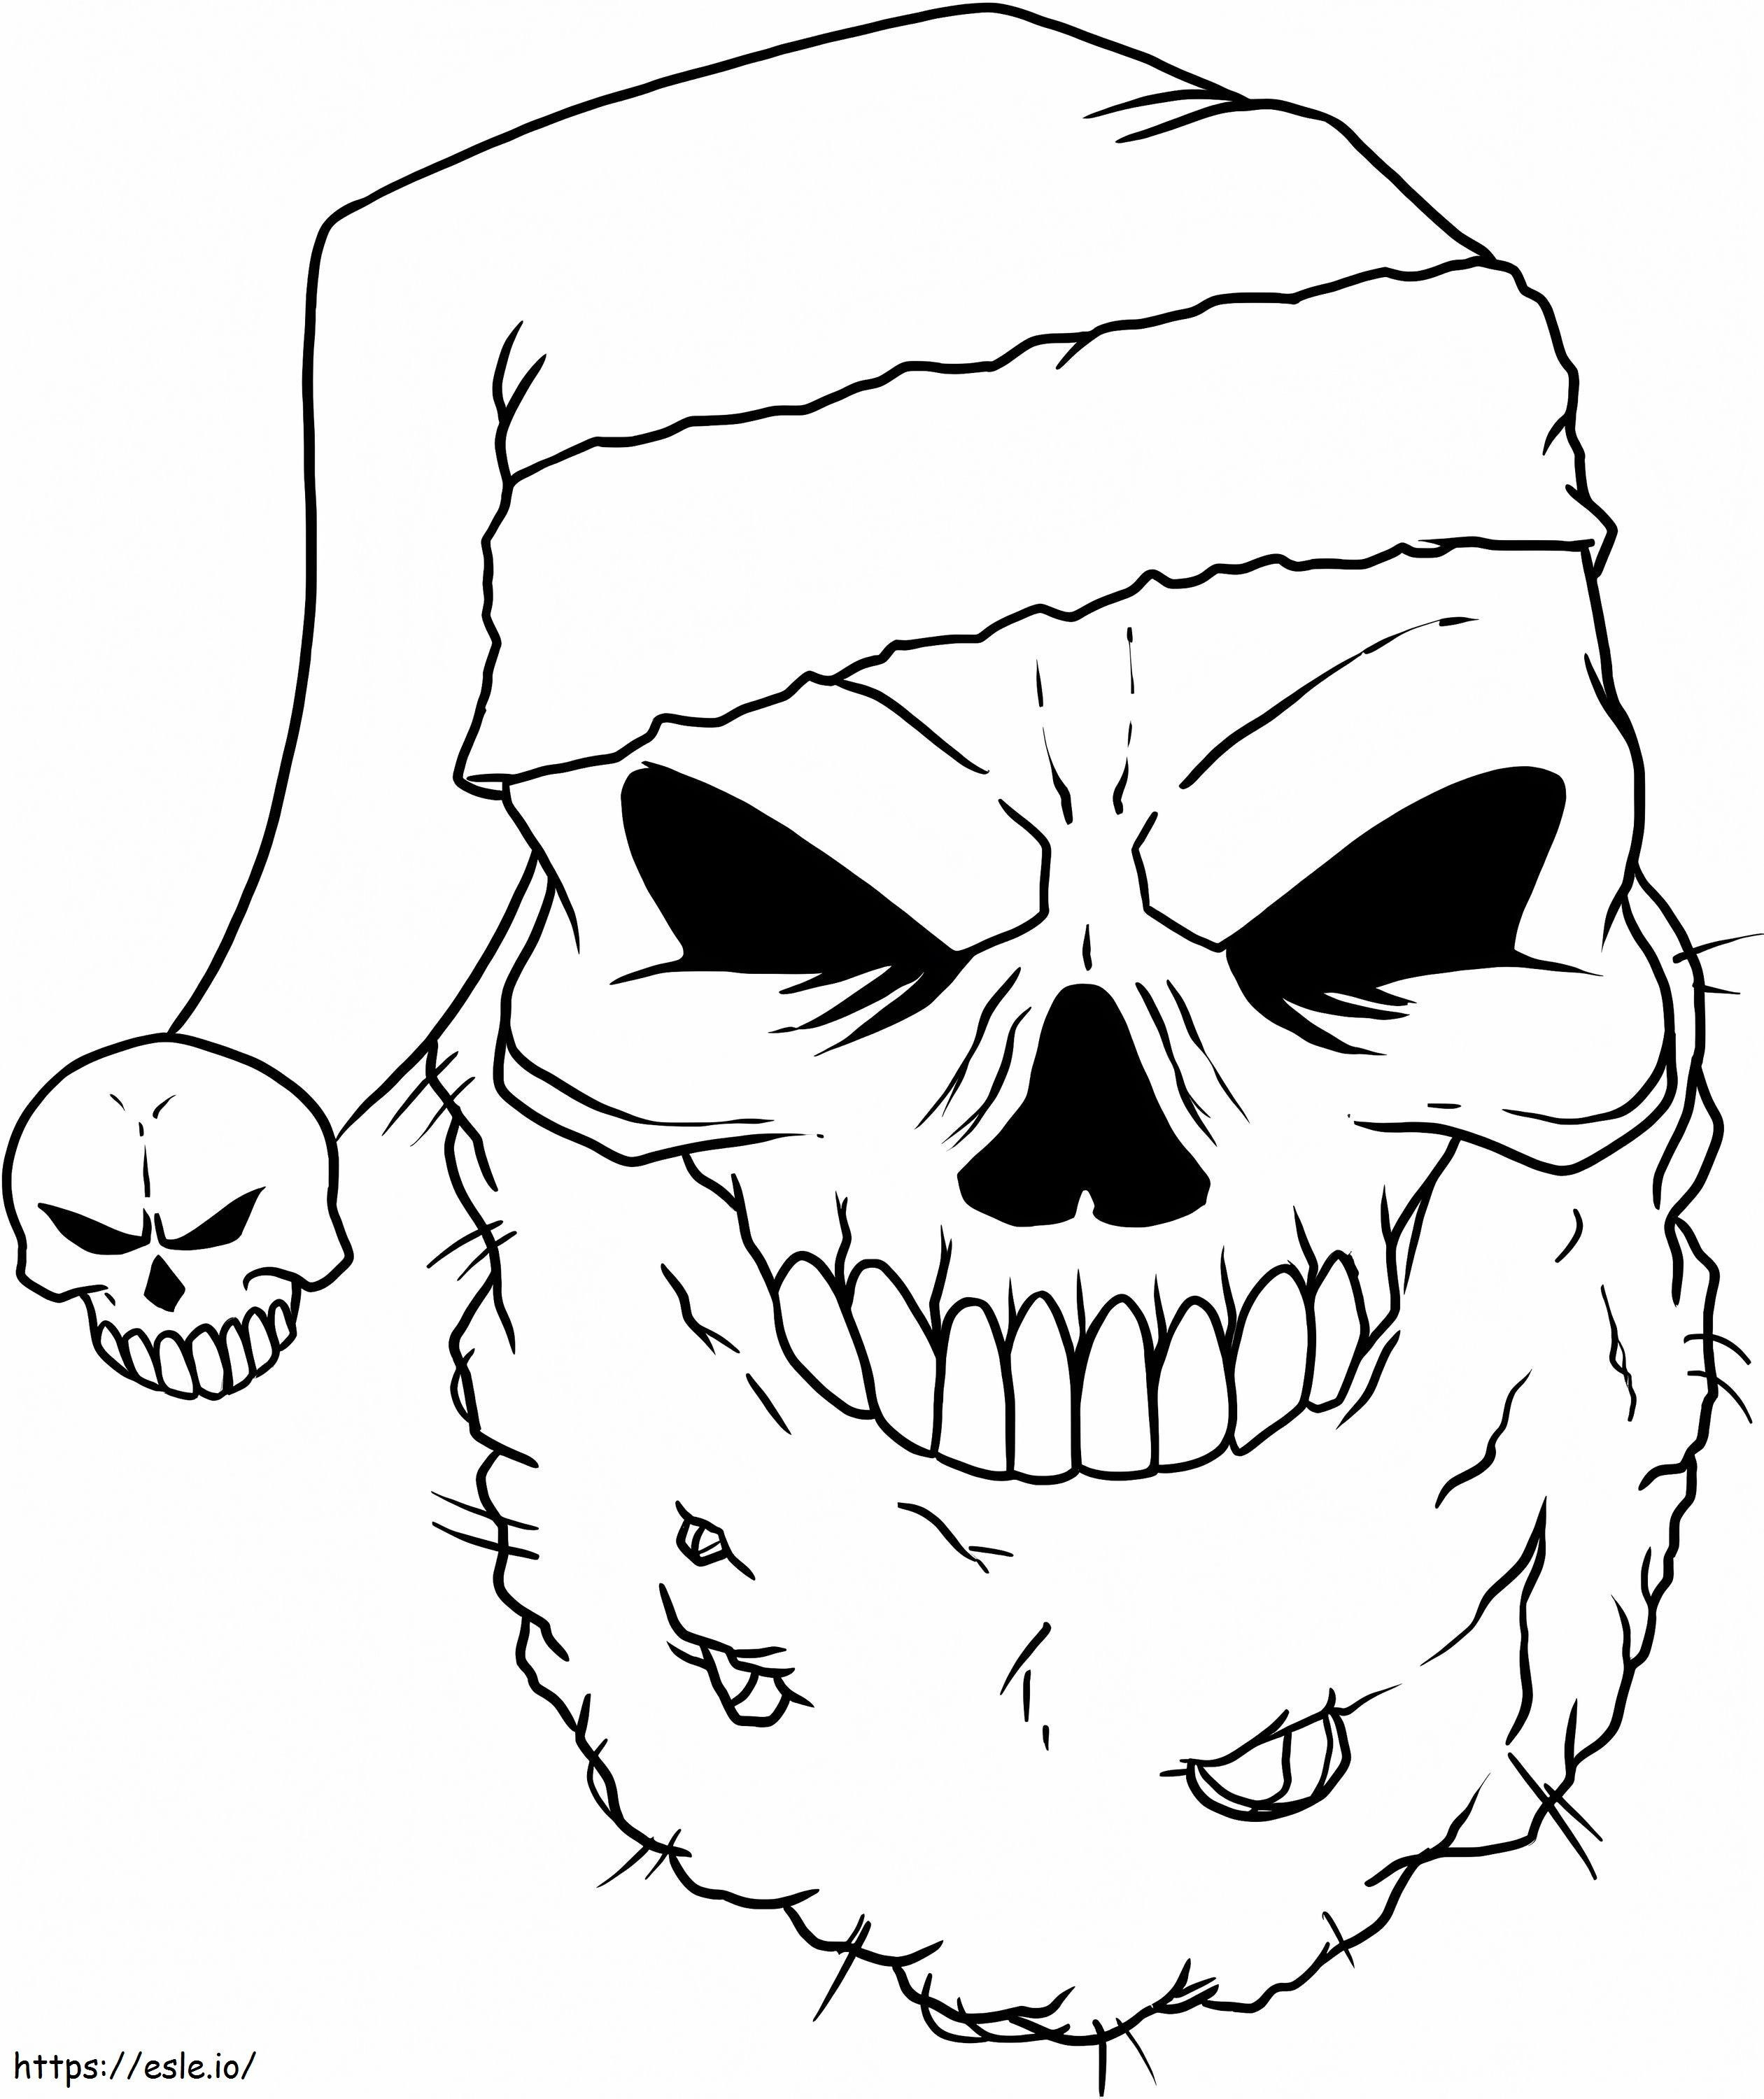 Diversão com crânio de Papai Noel para colorir